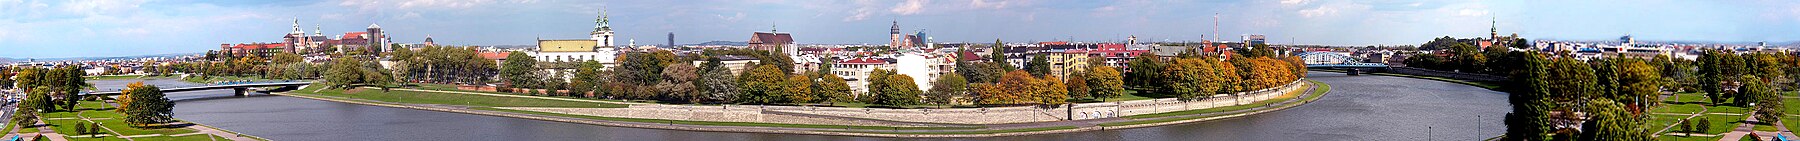 Panorama Krakow dari Forum Hotel.jpg